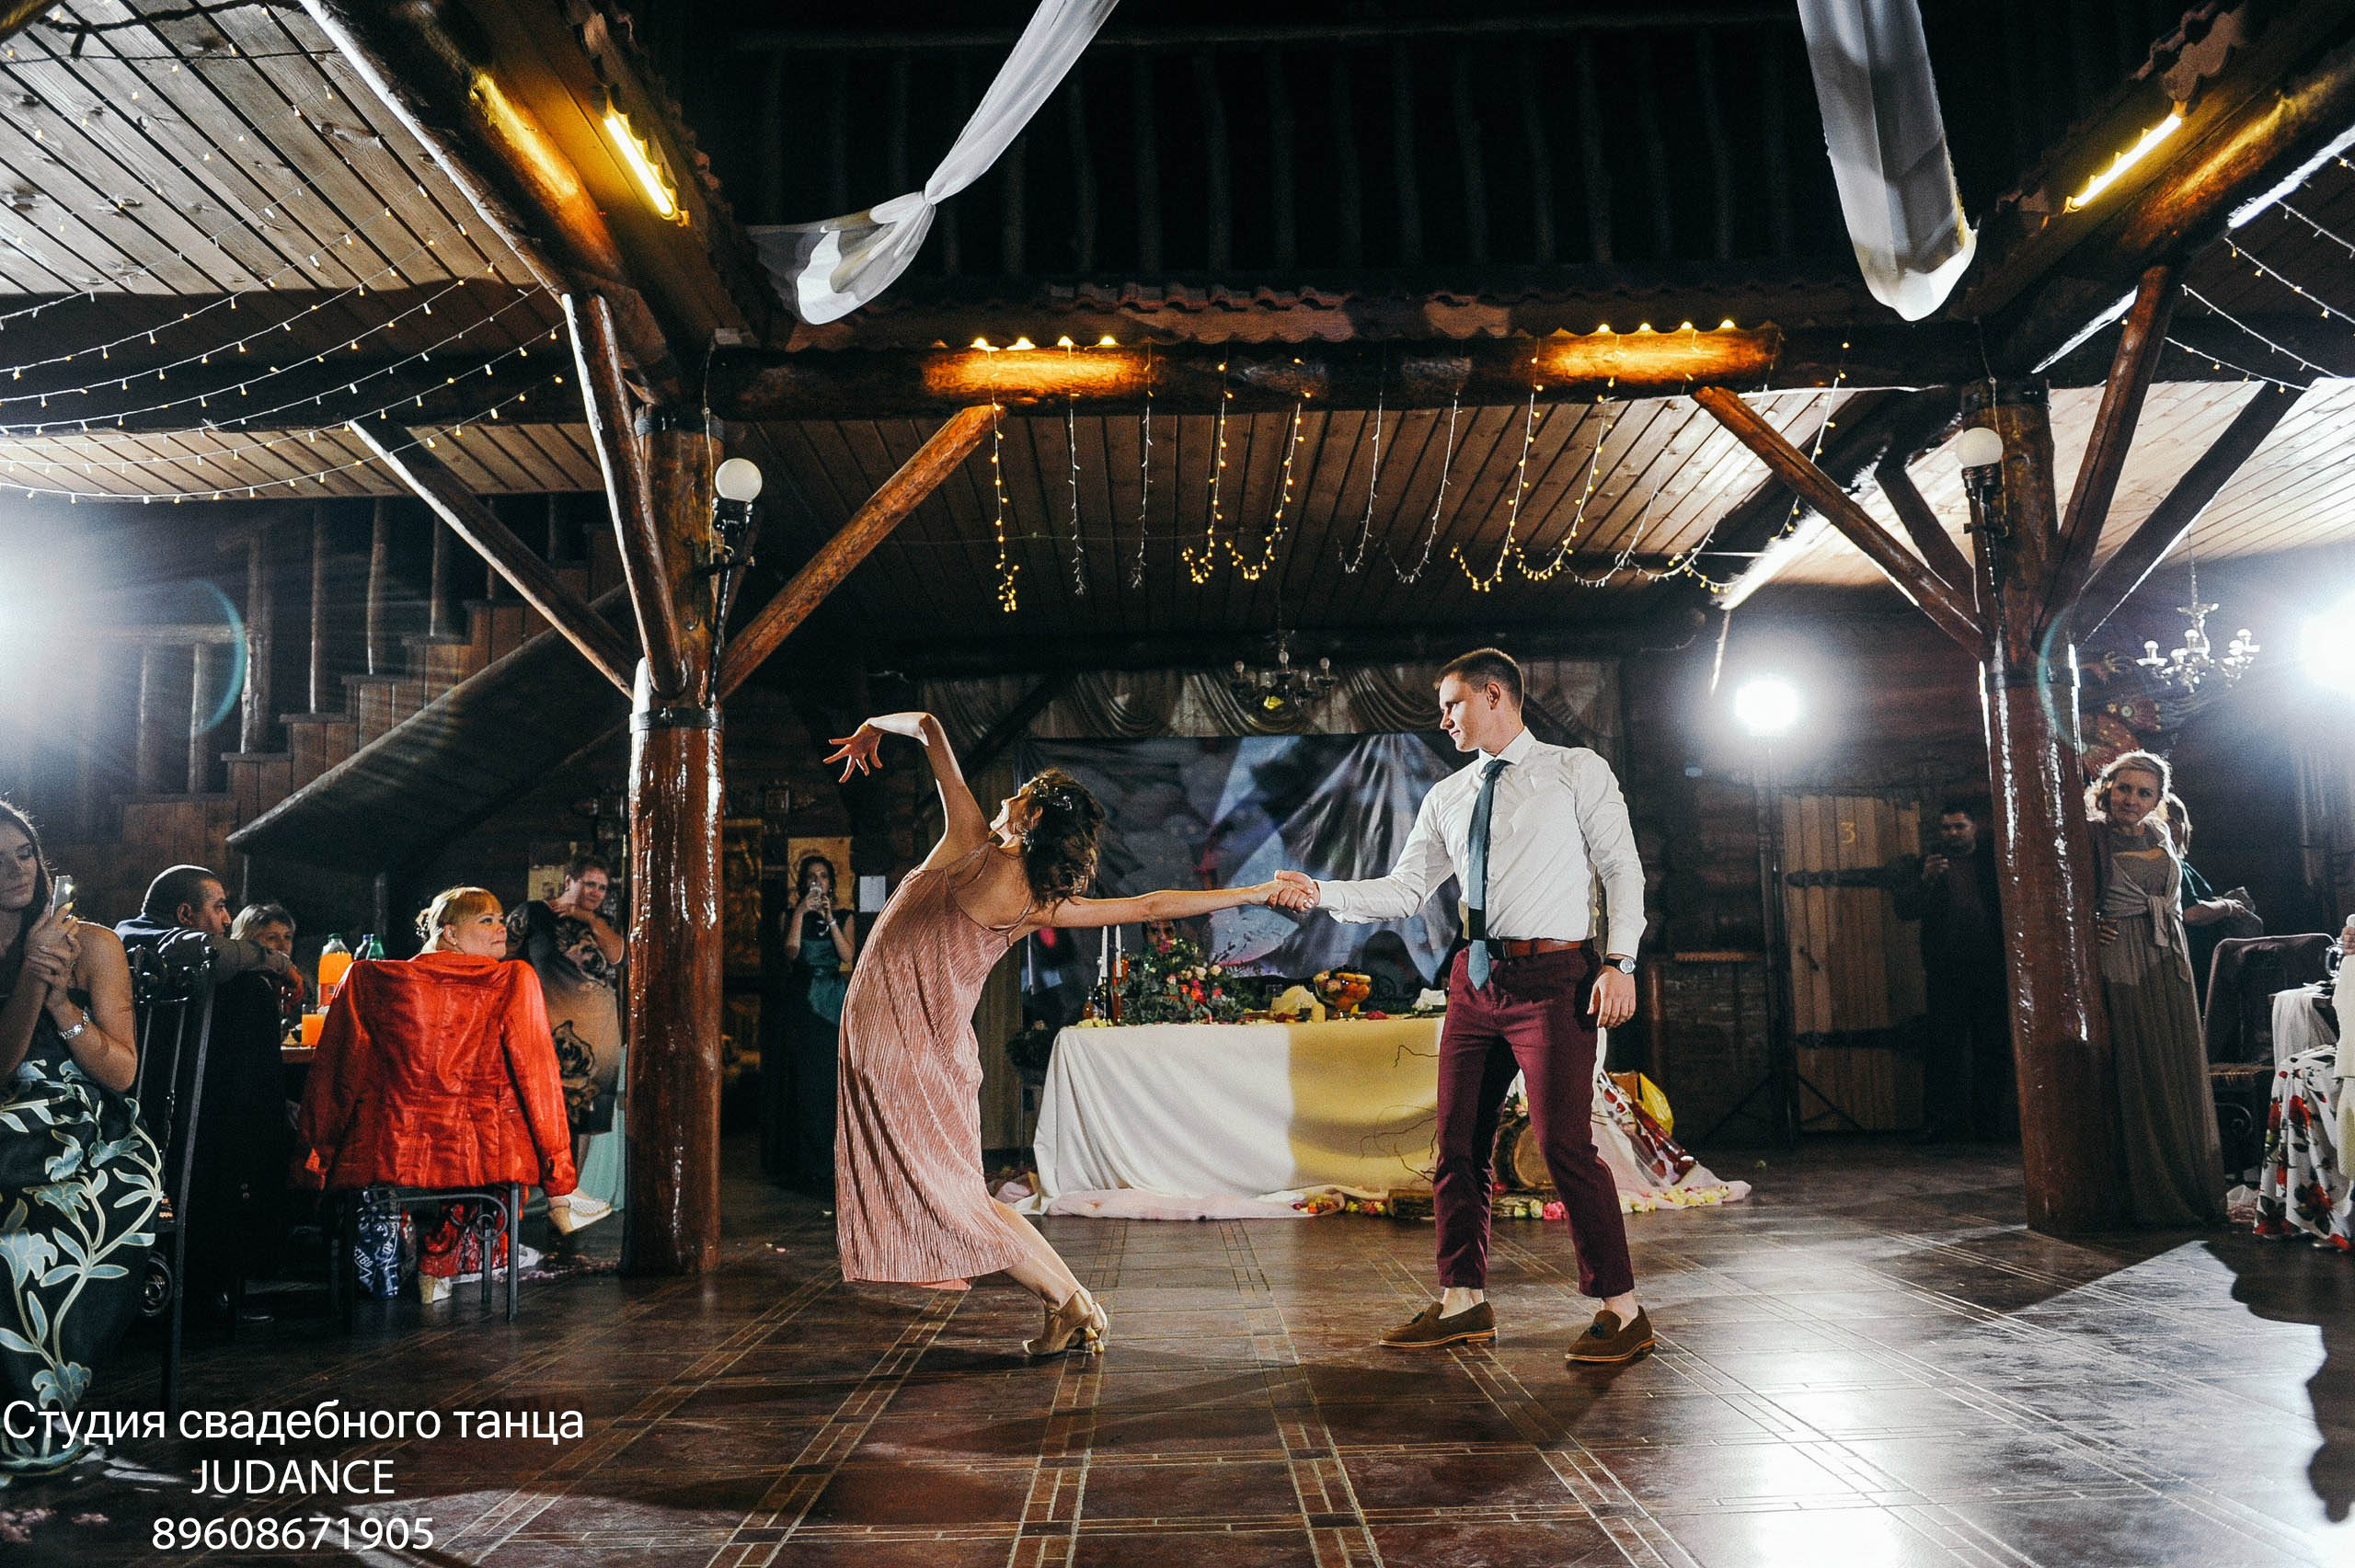 Студия свадебного танца Judance в Волгограде